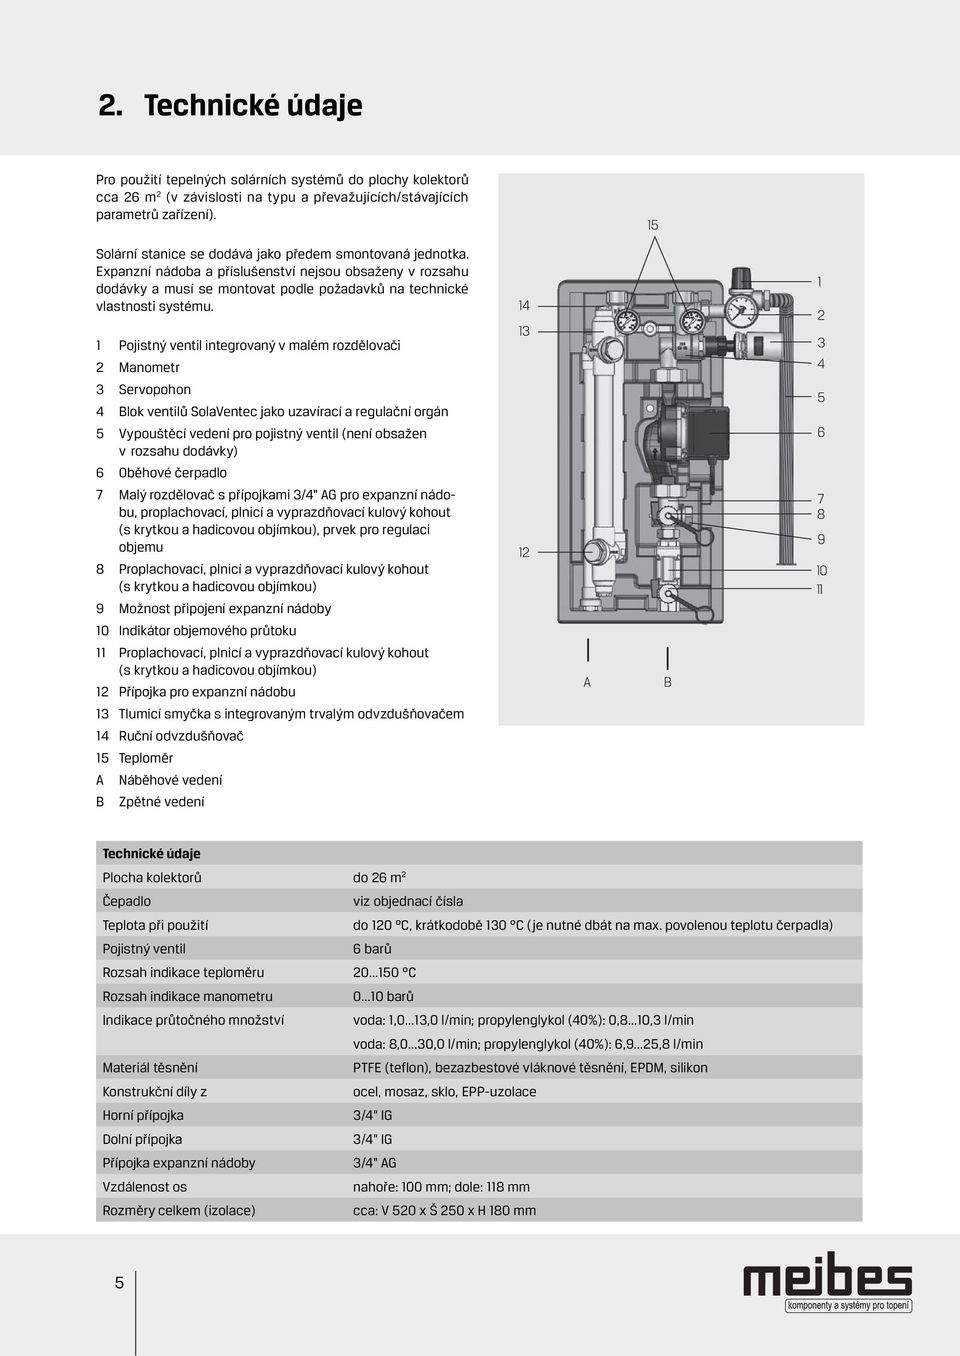 1 Pojistný ventil integrovaný v malém rozdělovači 2 Manometr 3 Servopohon 4 Blok ventilů SolaVentec jako uzavírací a regulační orgán 5 Vypouštěcí vedení pro pojistný ventil (není obsažen v rozsahu